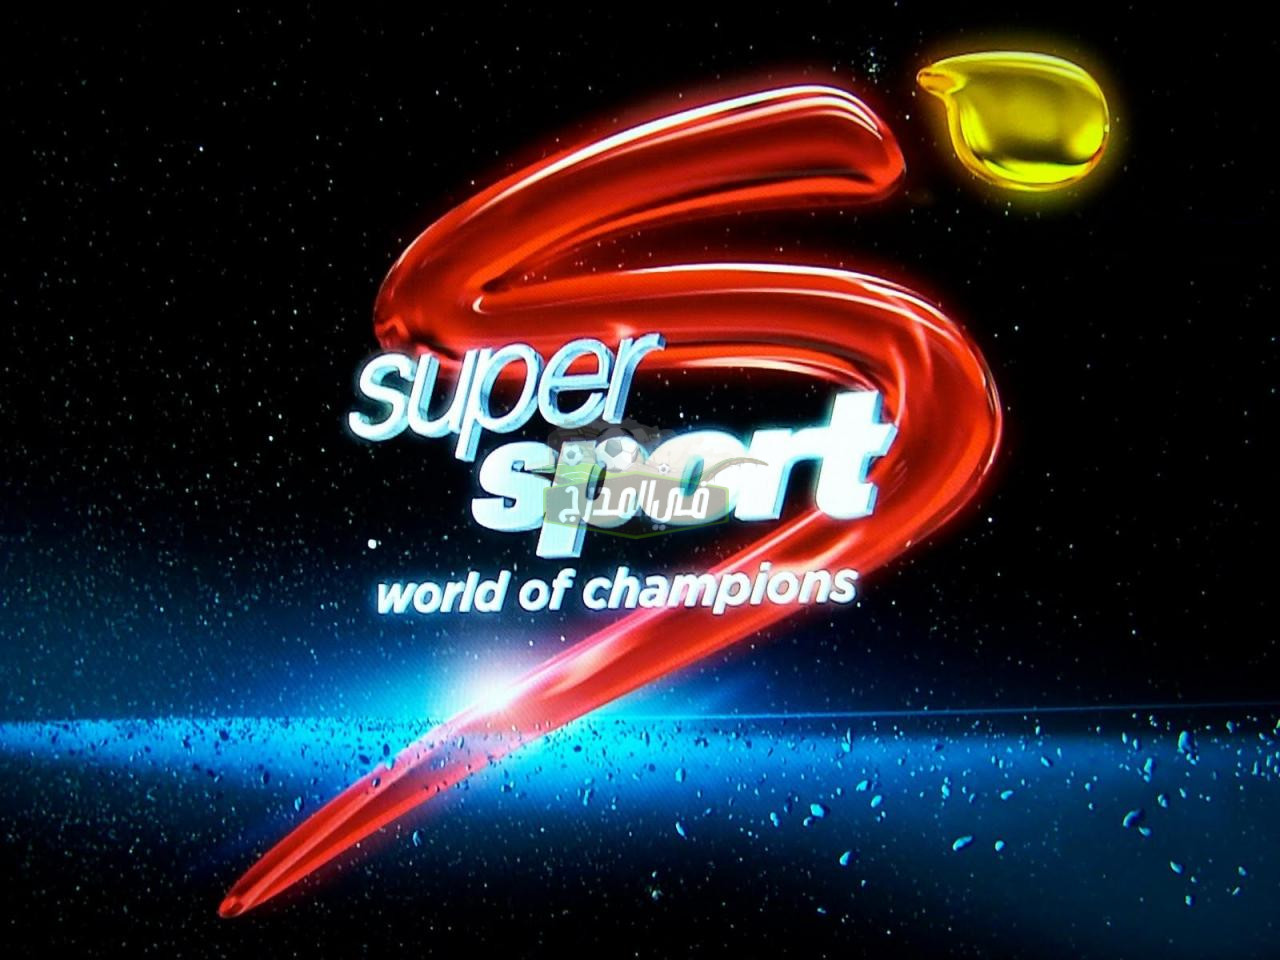 ثبت الآن || تردد قناة SuperSport South Africa الناقلة لمباريات دوري أبطال أفريقيا